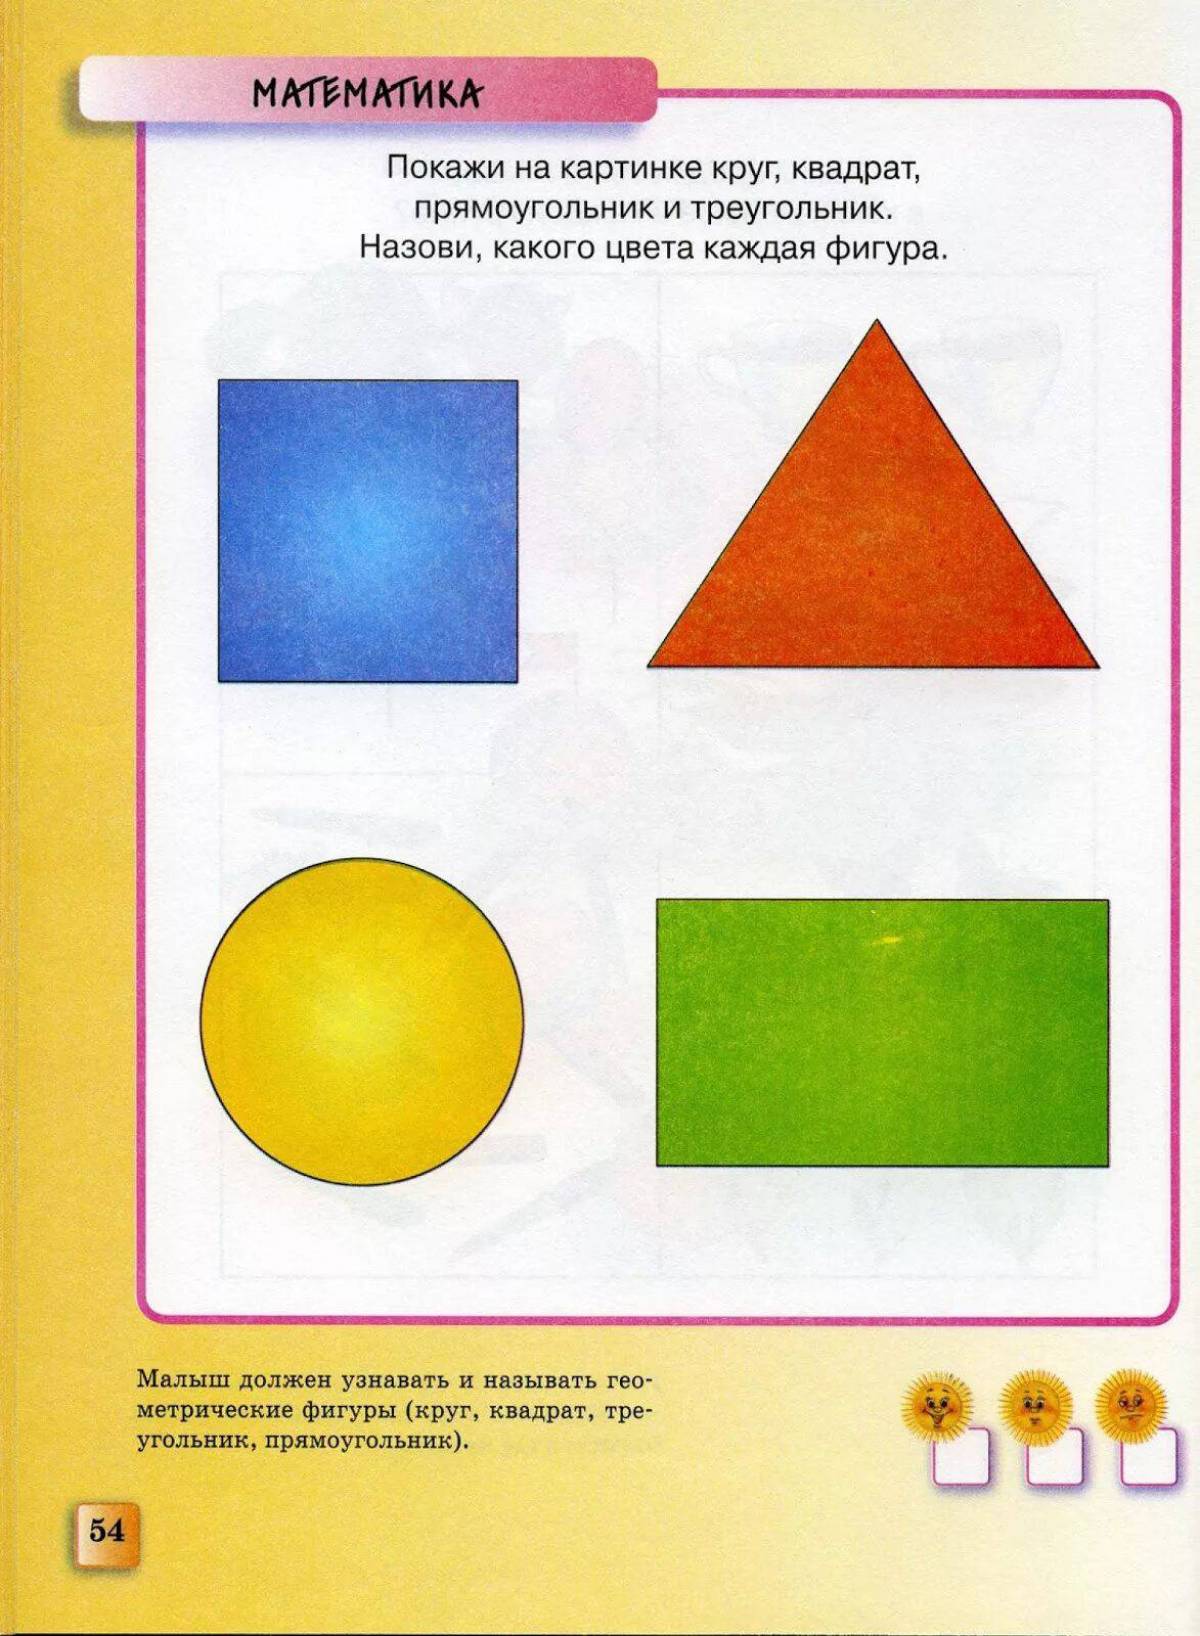 Круг квадрат треугольник для детей 3 4 лет #37